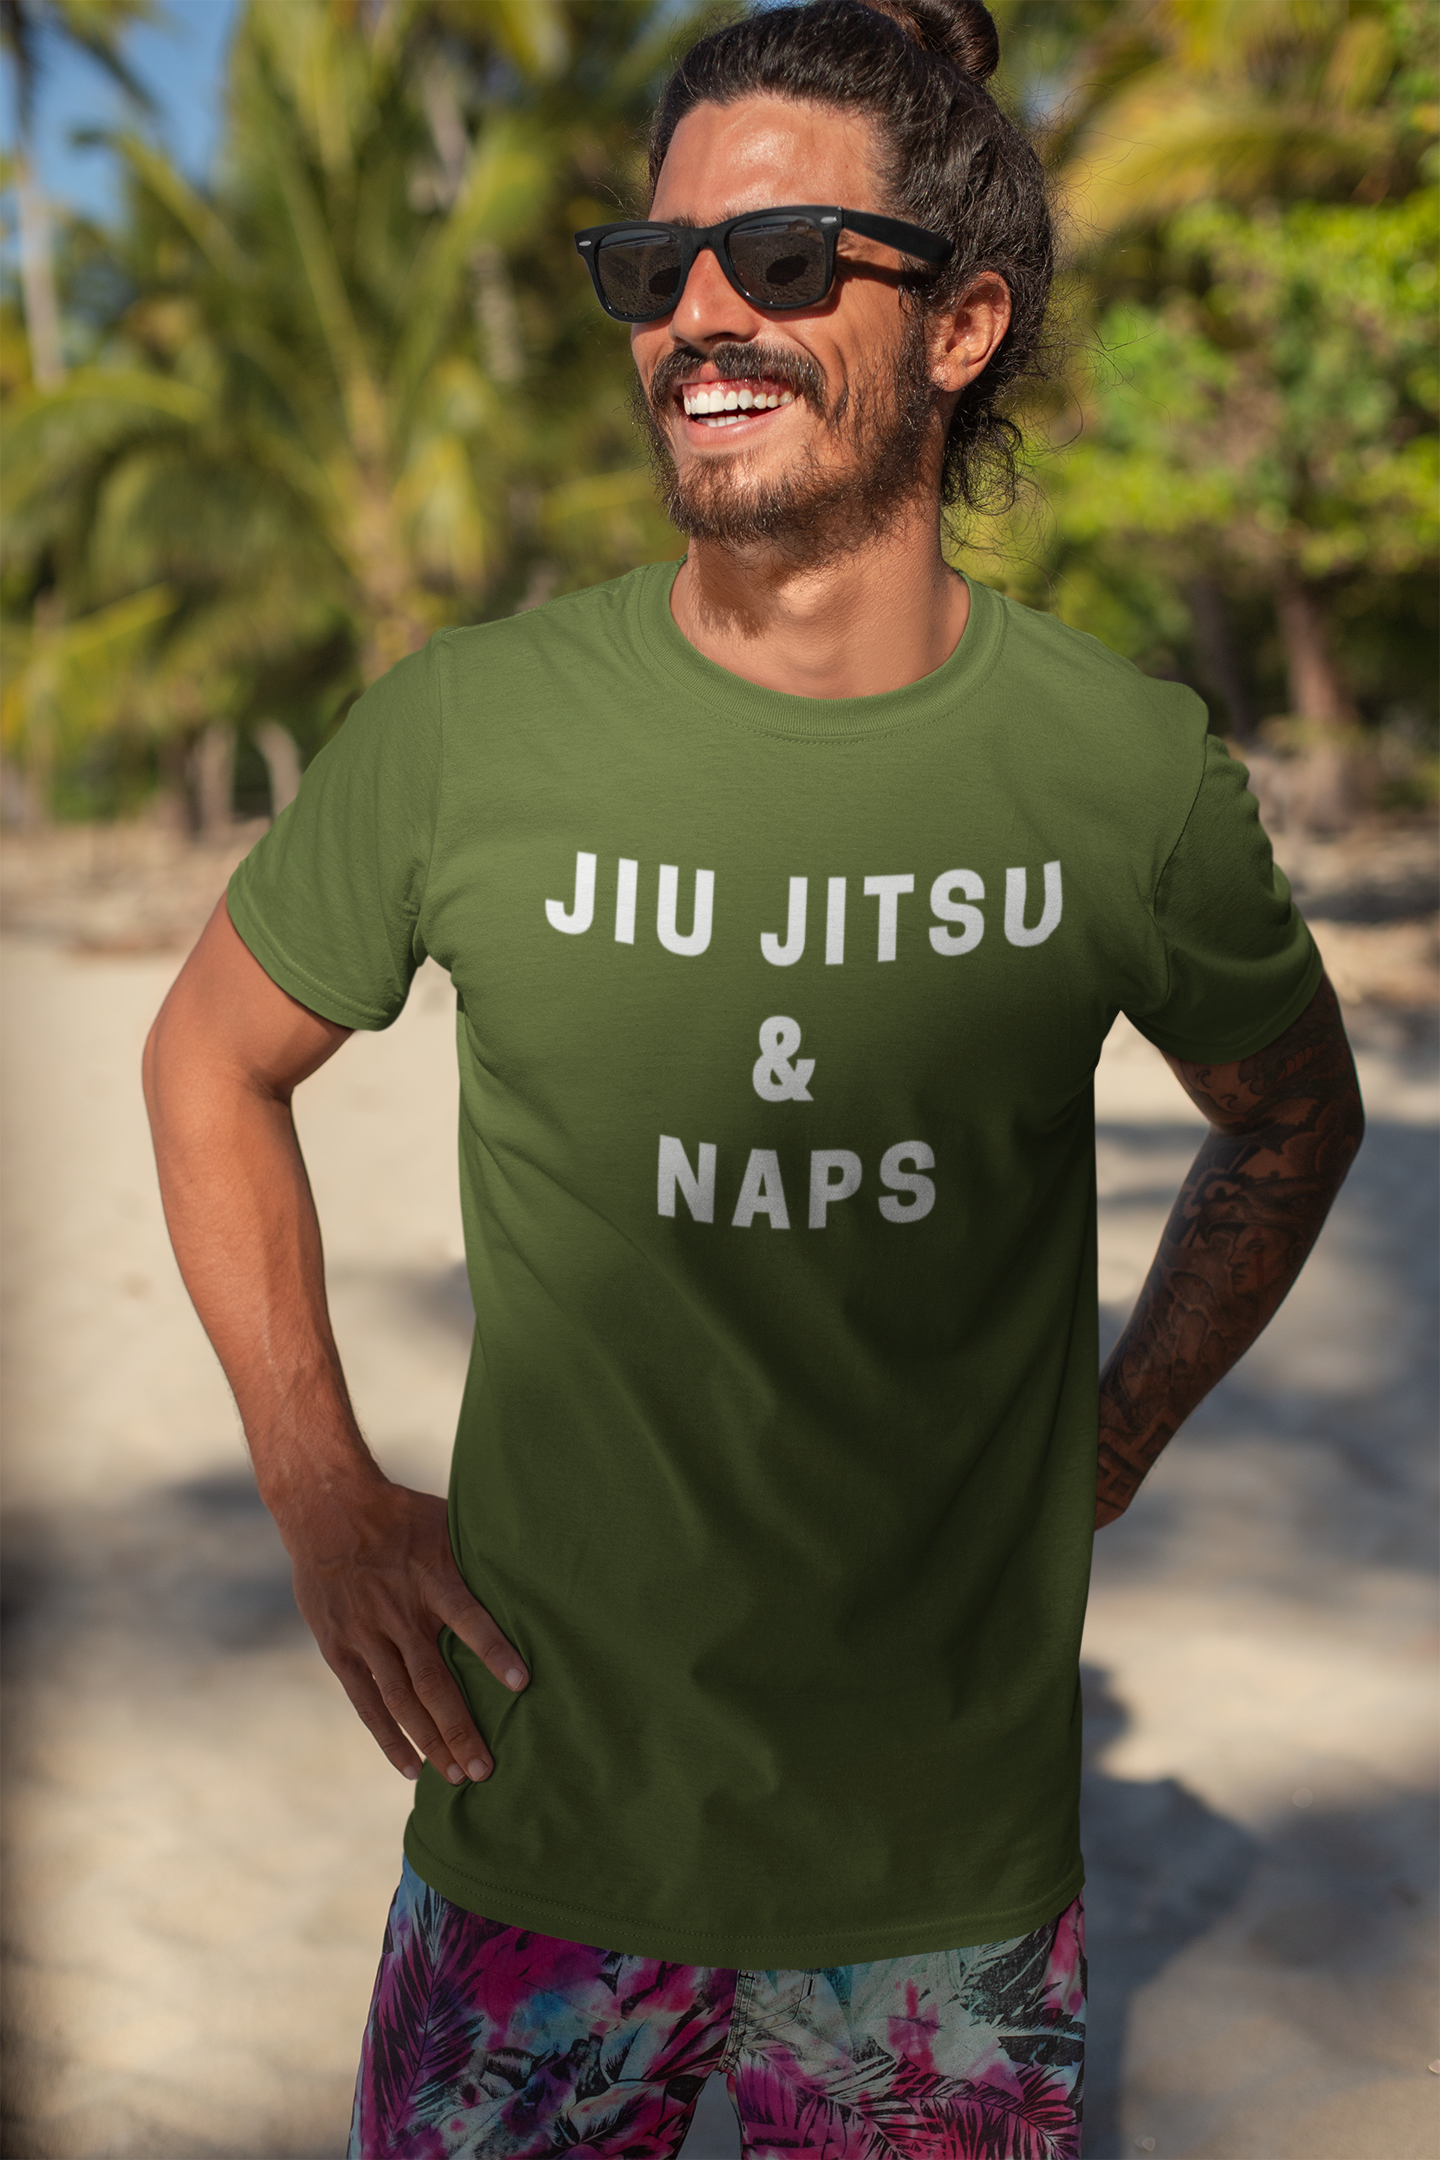 Jiu jitsu & naps t-shirt